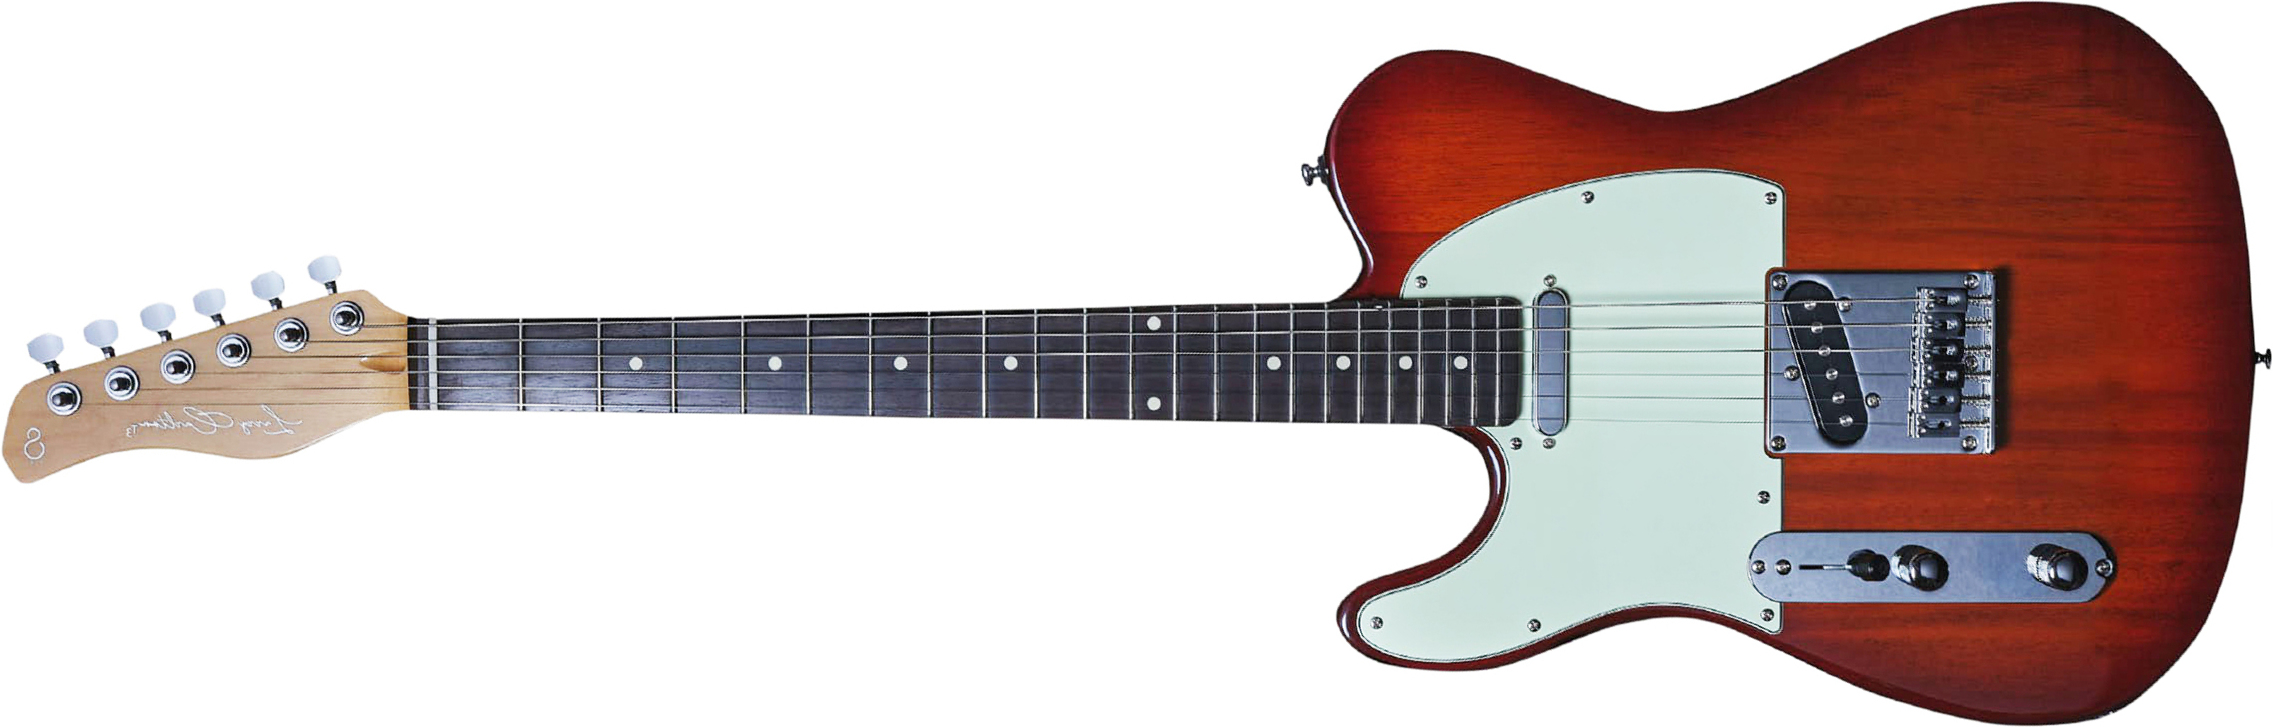 Sire Larry Carlton T3 Lh Signature Gaucher 2s Ht Rw - Tobacco Sunburst - Linkshandige elektrische gitaar - Main picture